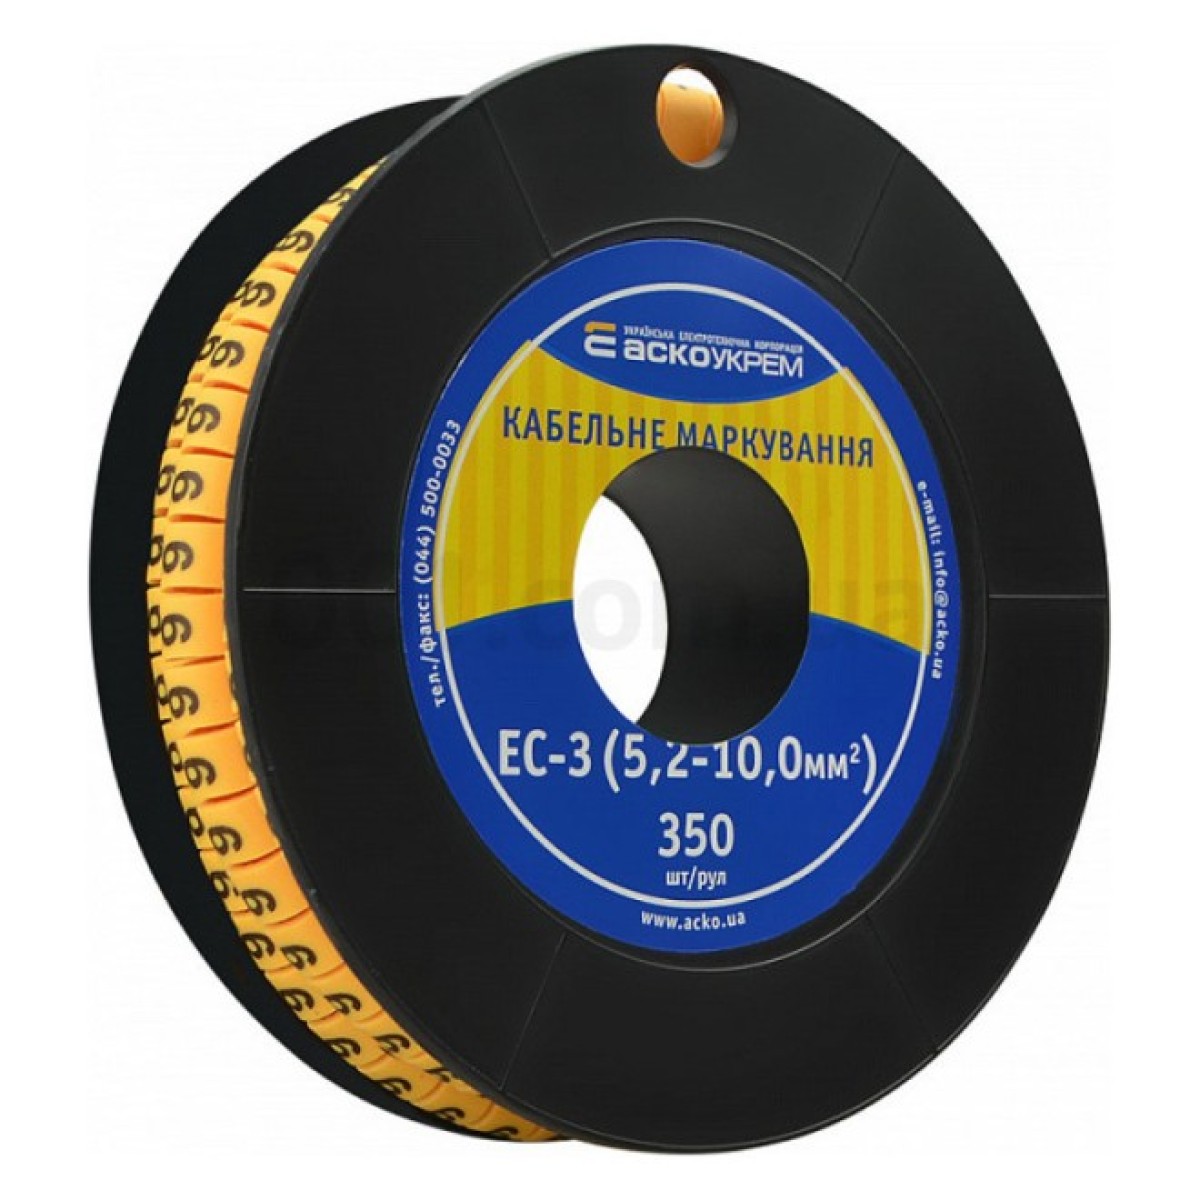 Маркування ЕС-3 для кабелю 5,2-10,0 мм² символ «9» (рулон 250 шт.), АСКО-УКРЕМ 98_98.jpg - фото 1